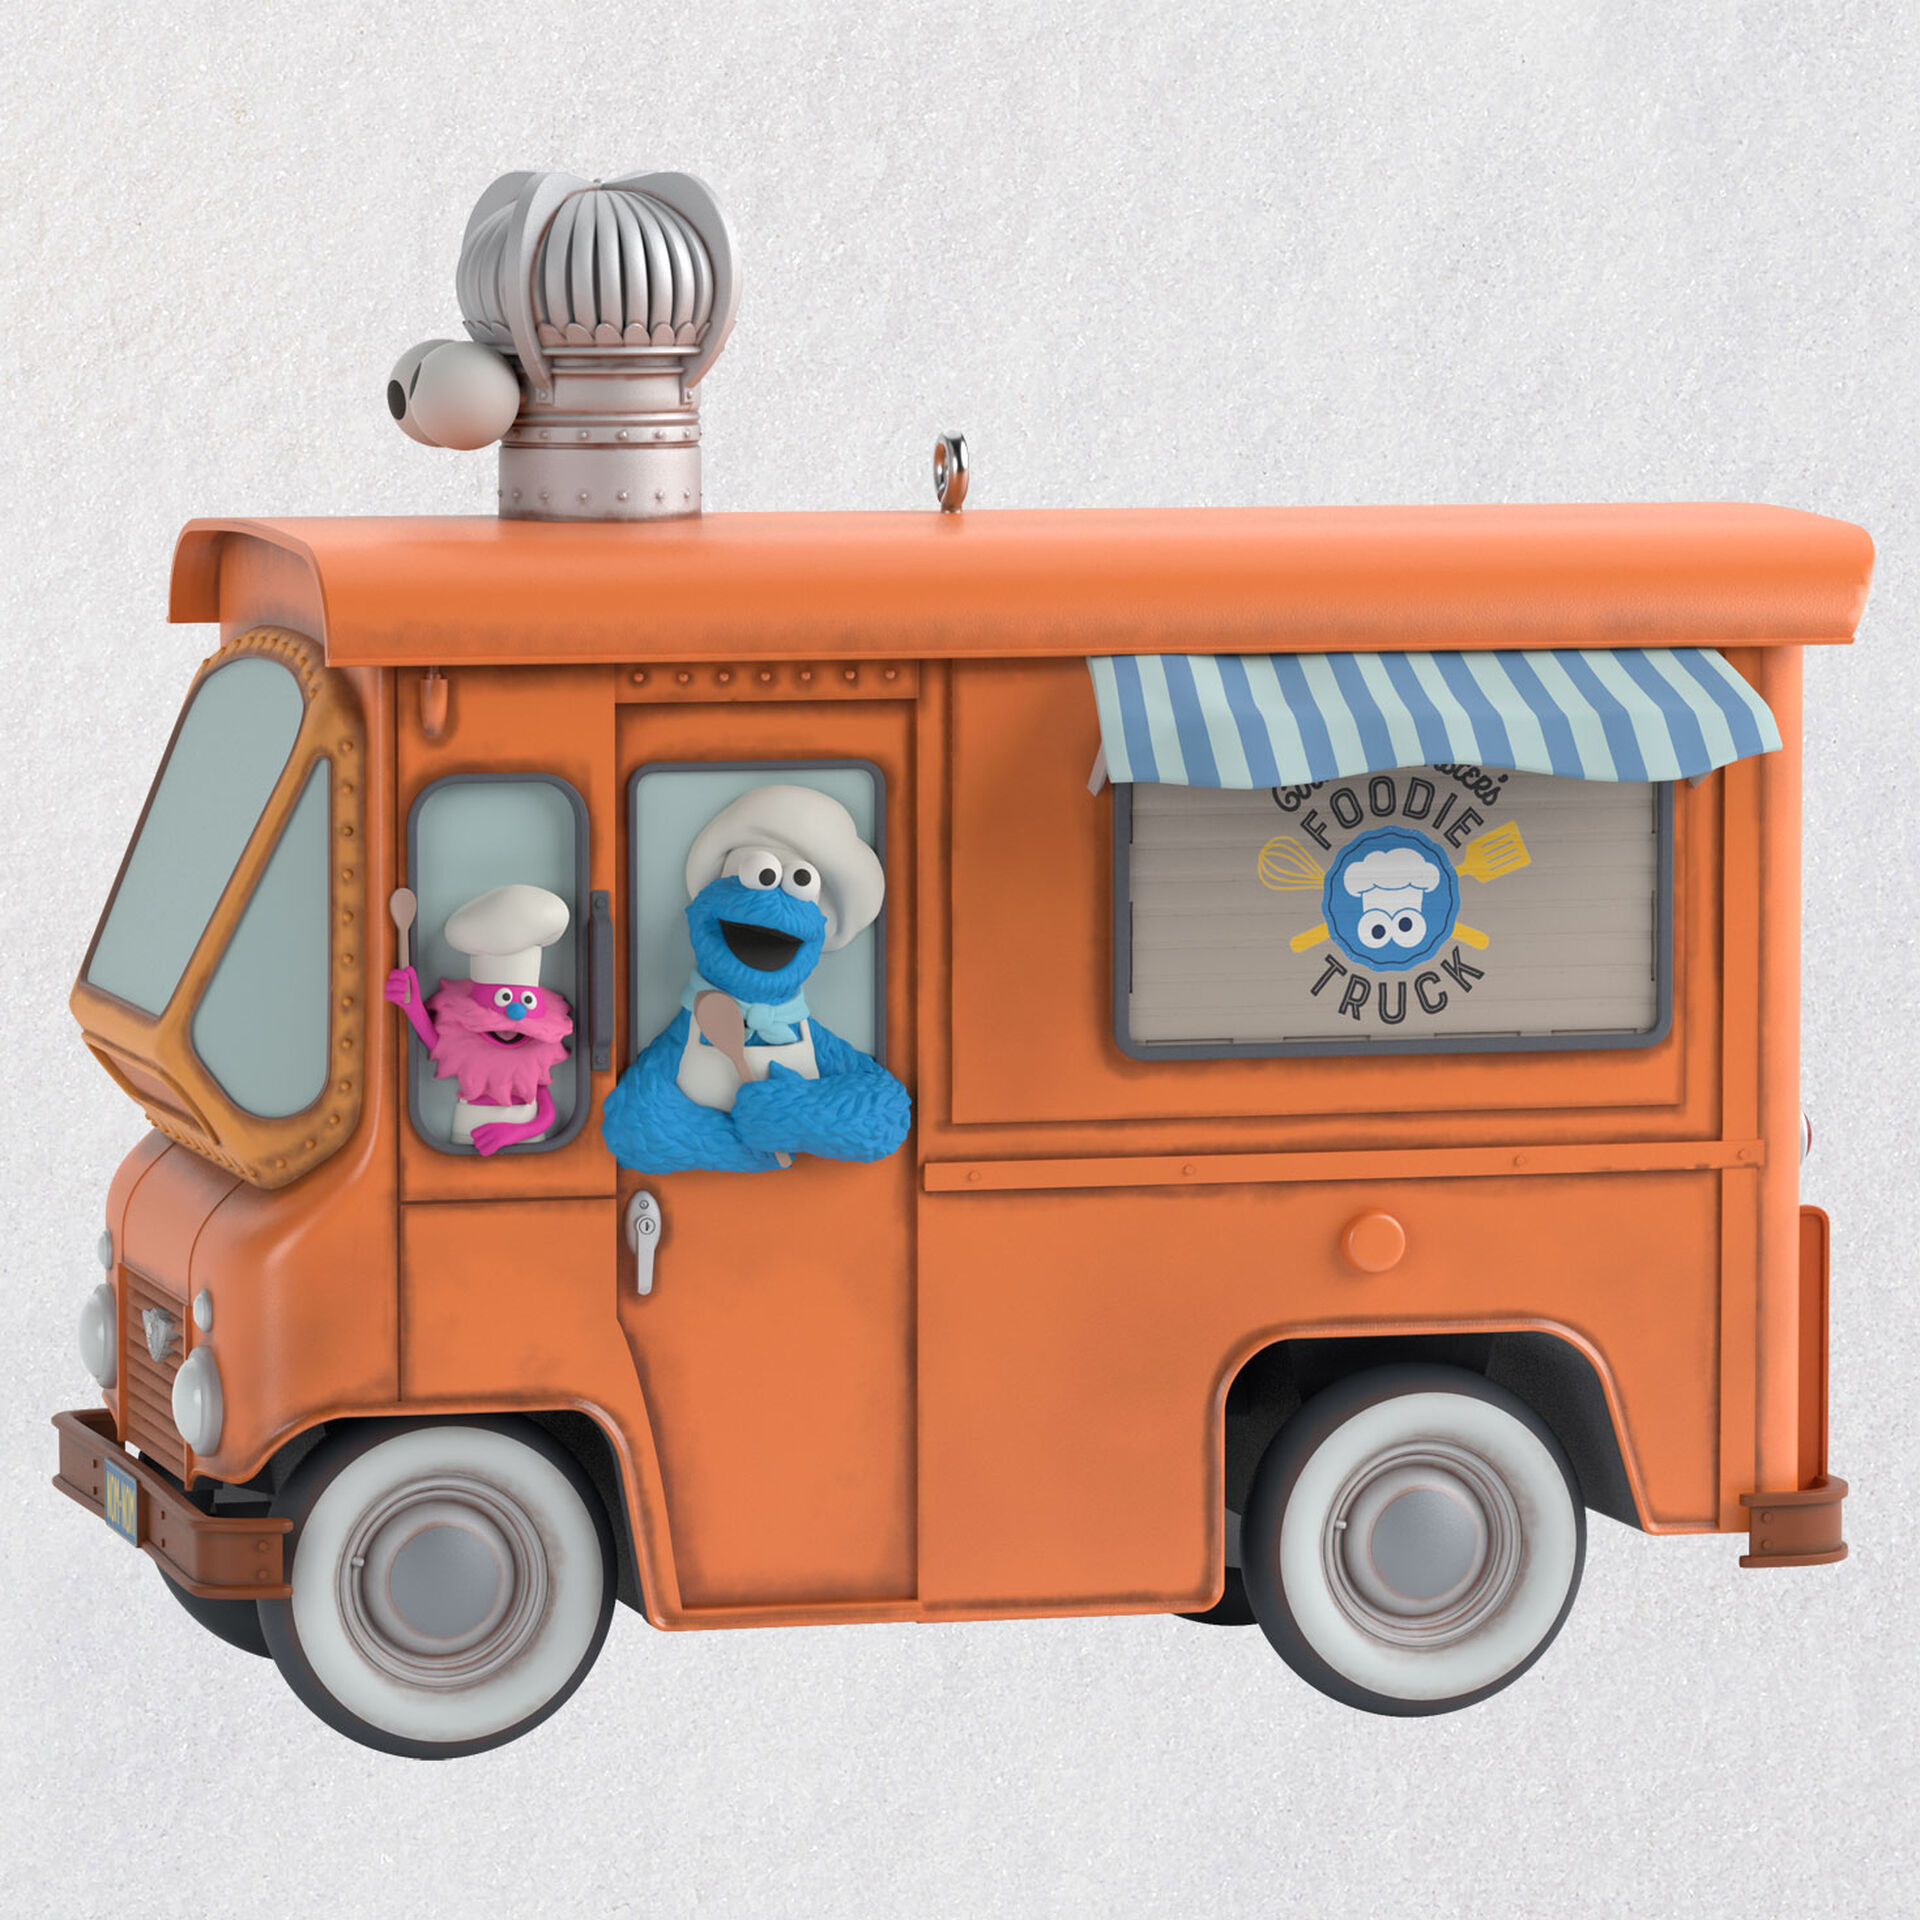 2020 - Cookie Monster Cookie Jar, by Sesame Workshop